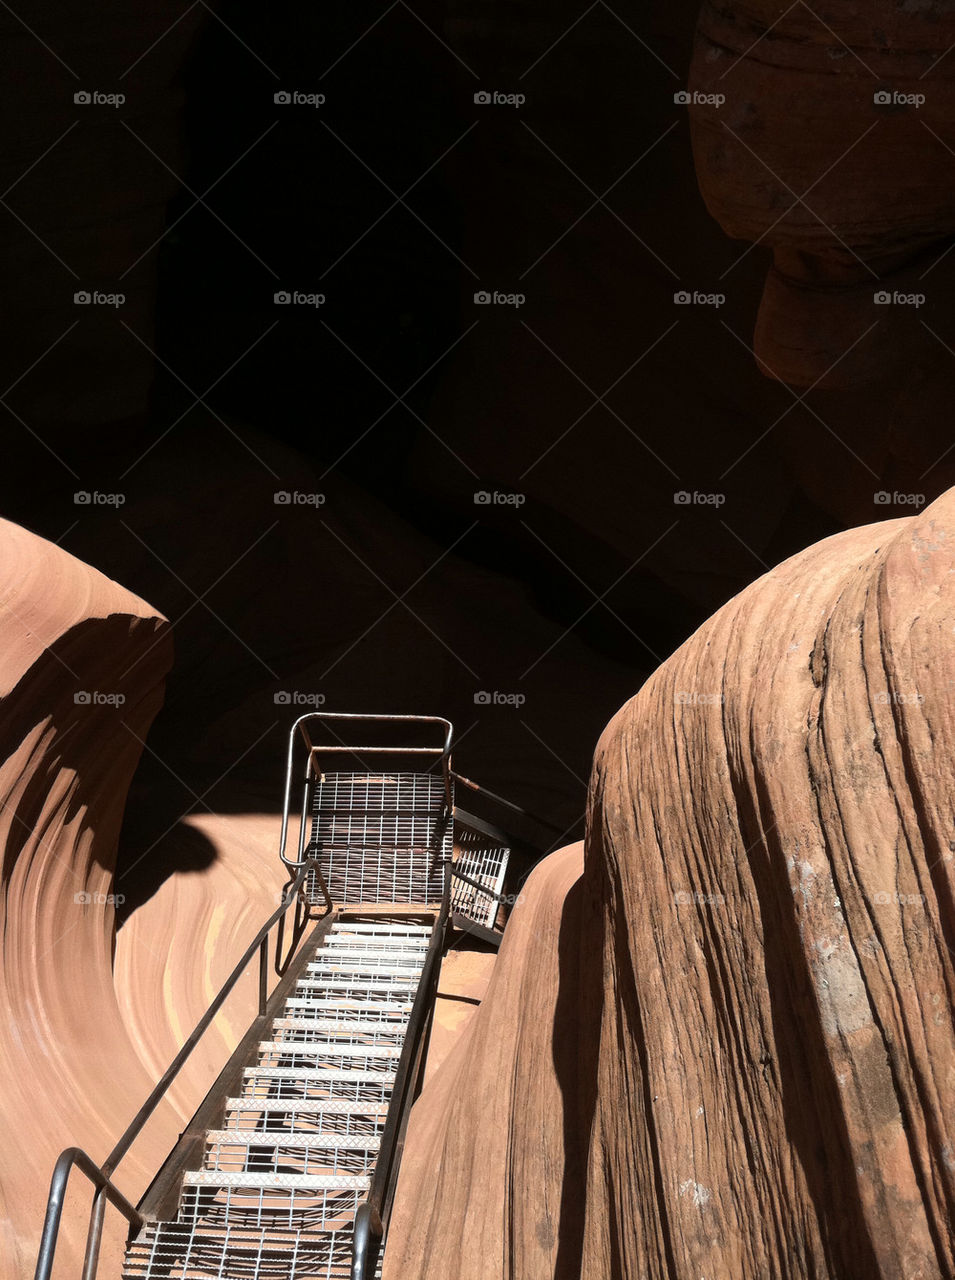 desert stairway canyon antelope by kimbo32